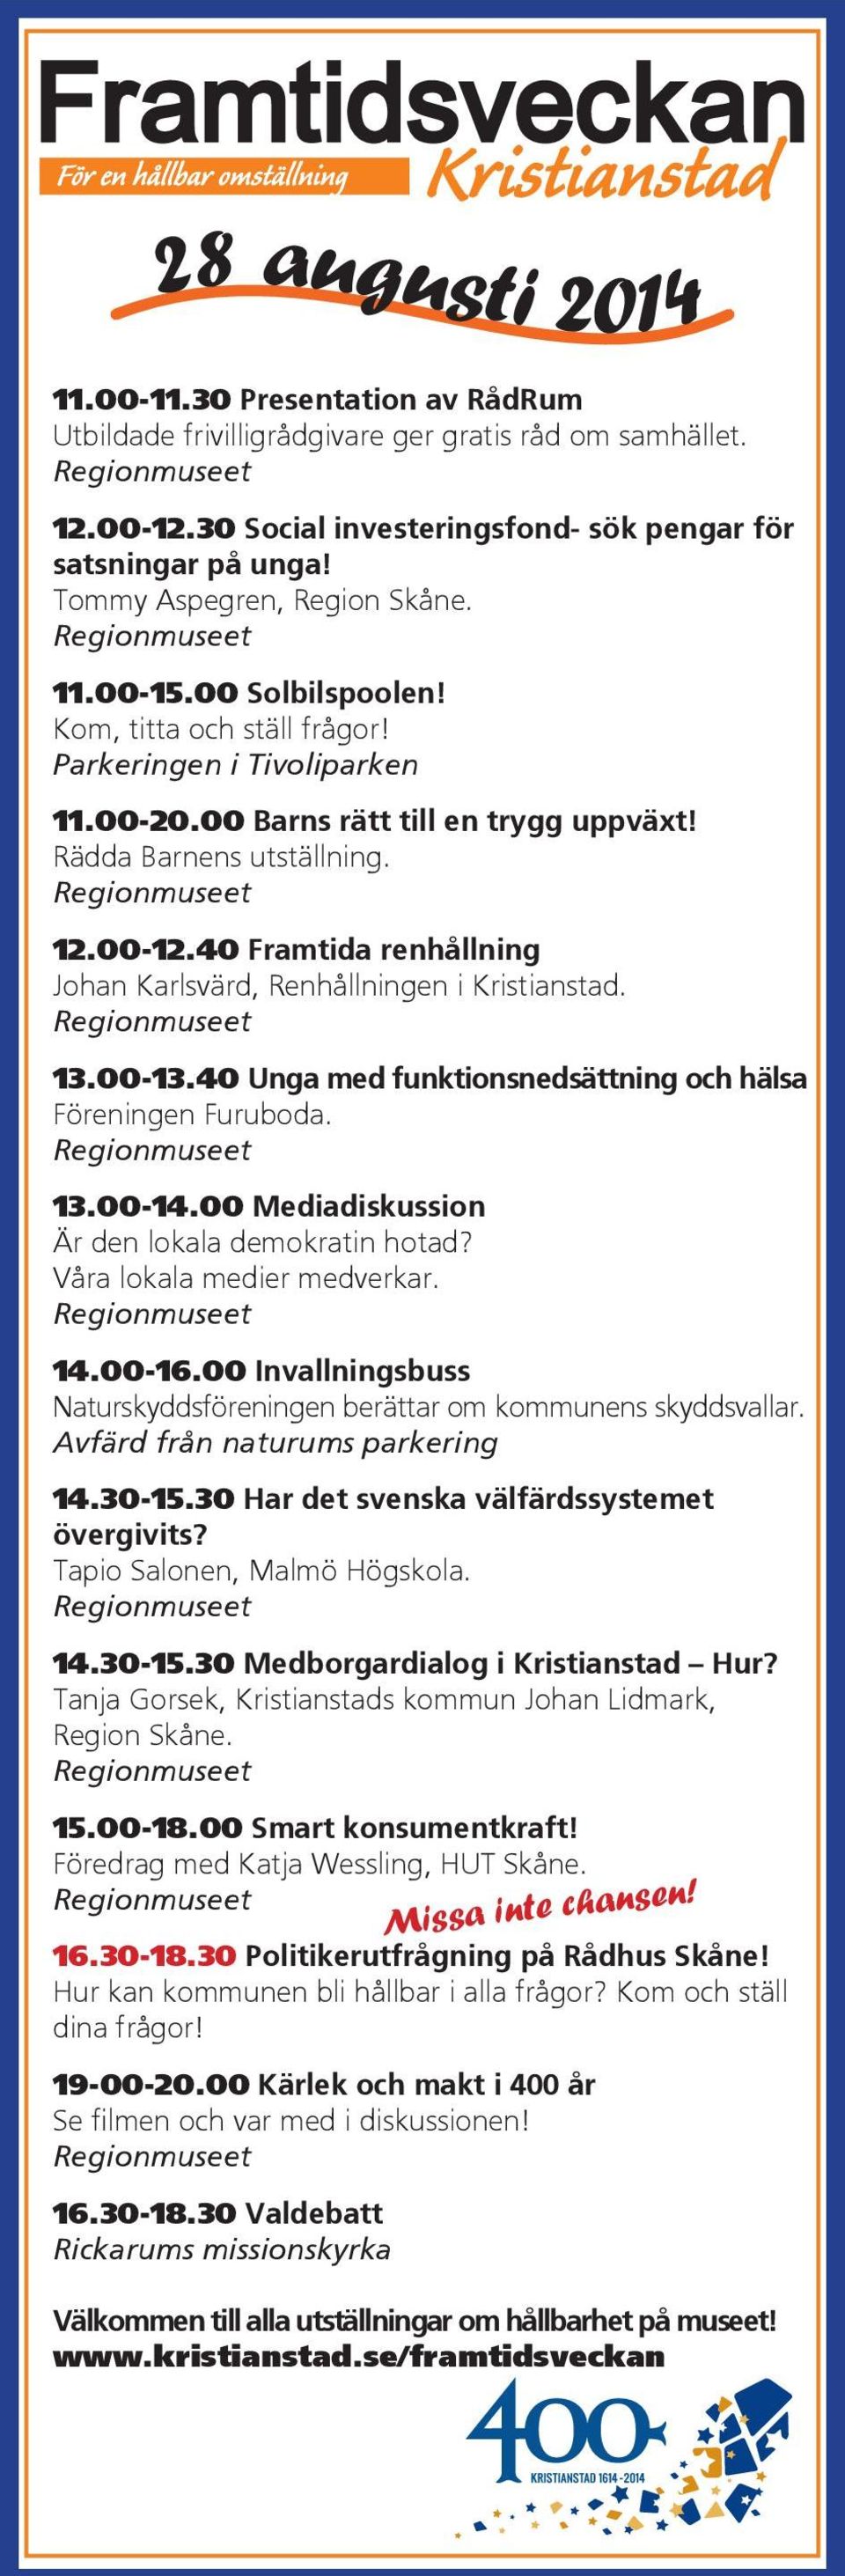 40 Framtida renhållning Johan Karlsvärd, Renhållningen i Kristianstad. 13.00-13.40 Unga med funktionsnedsättning och hälsa Föreningen Furuboda. 13.00-14.